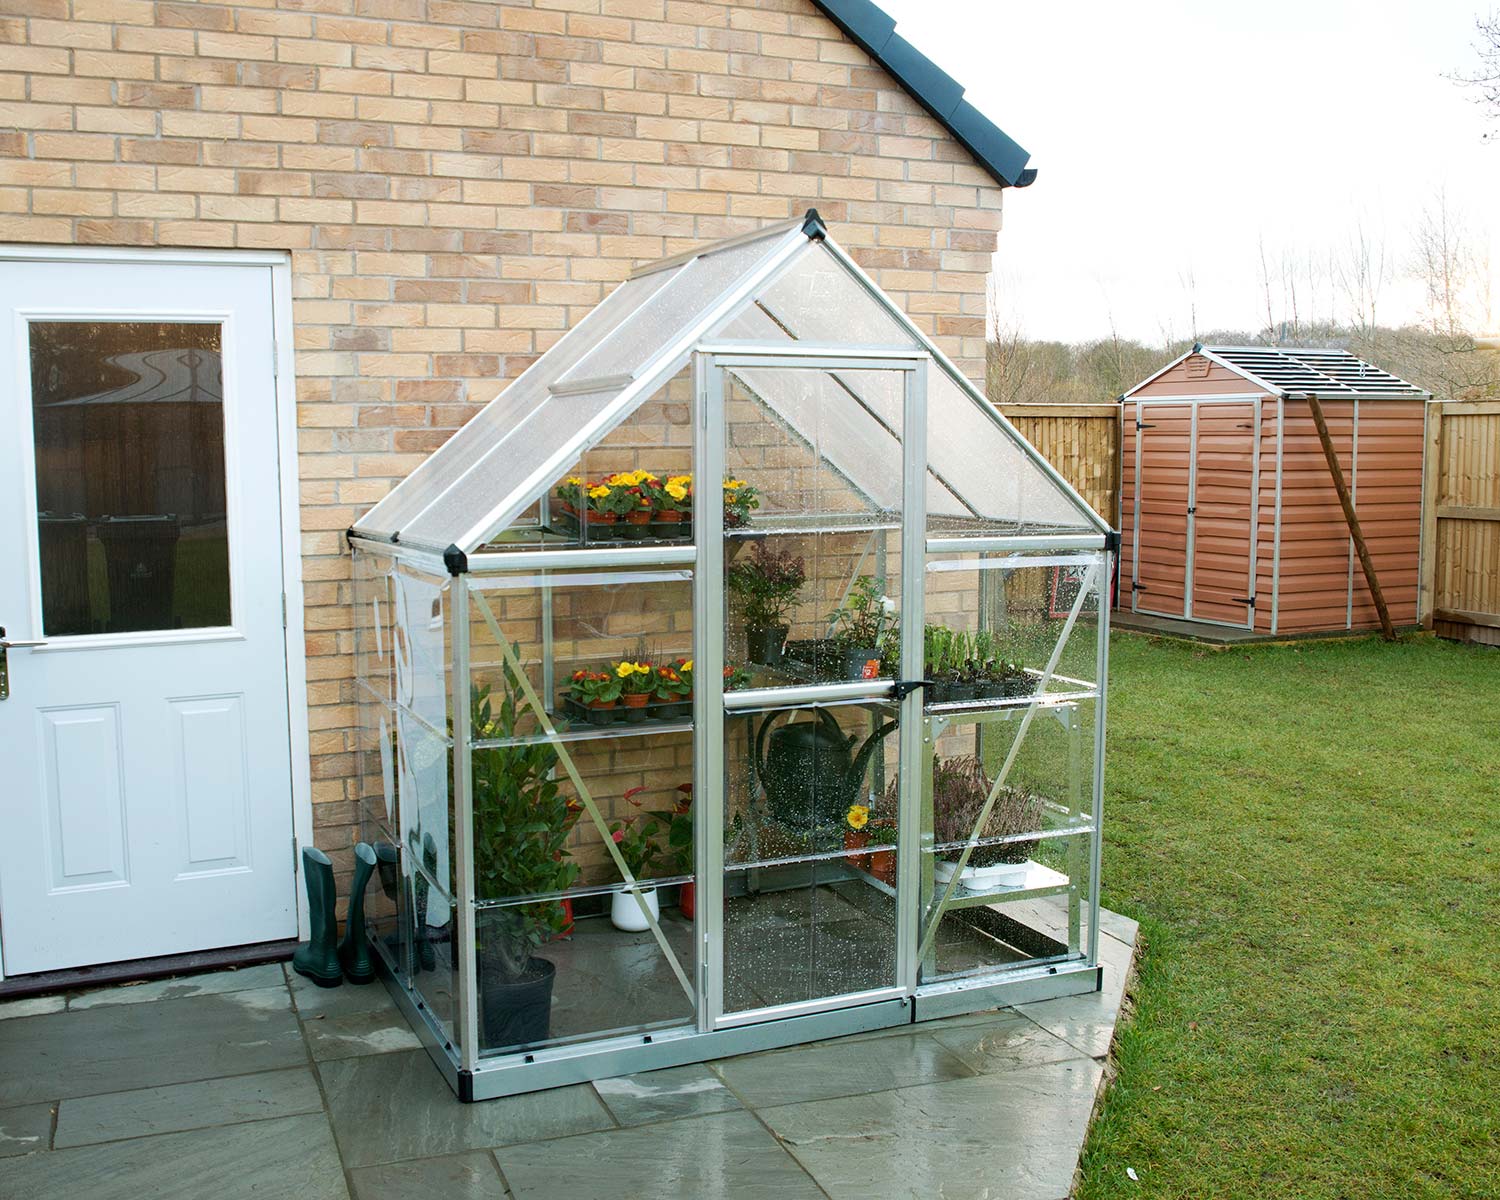 Greenhouse Hybrid 6' x 4' Kit - Silver Structure & Hybrid Glazing